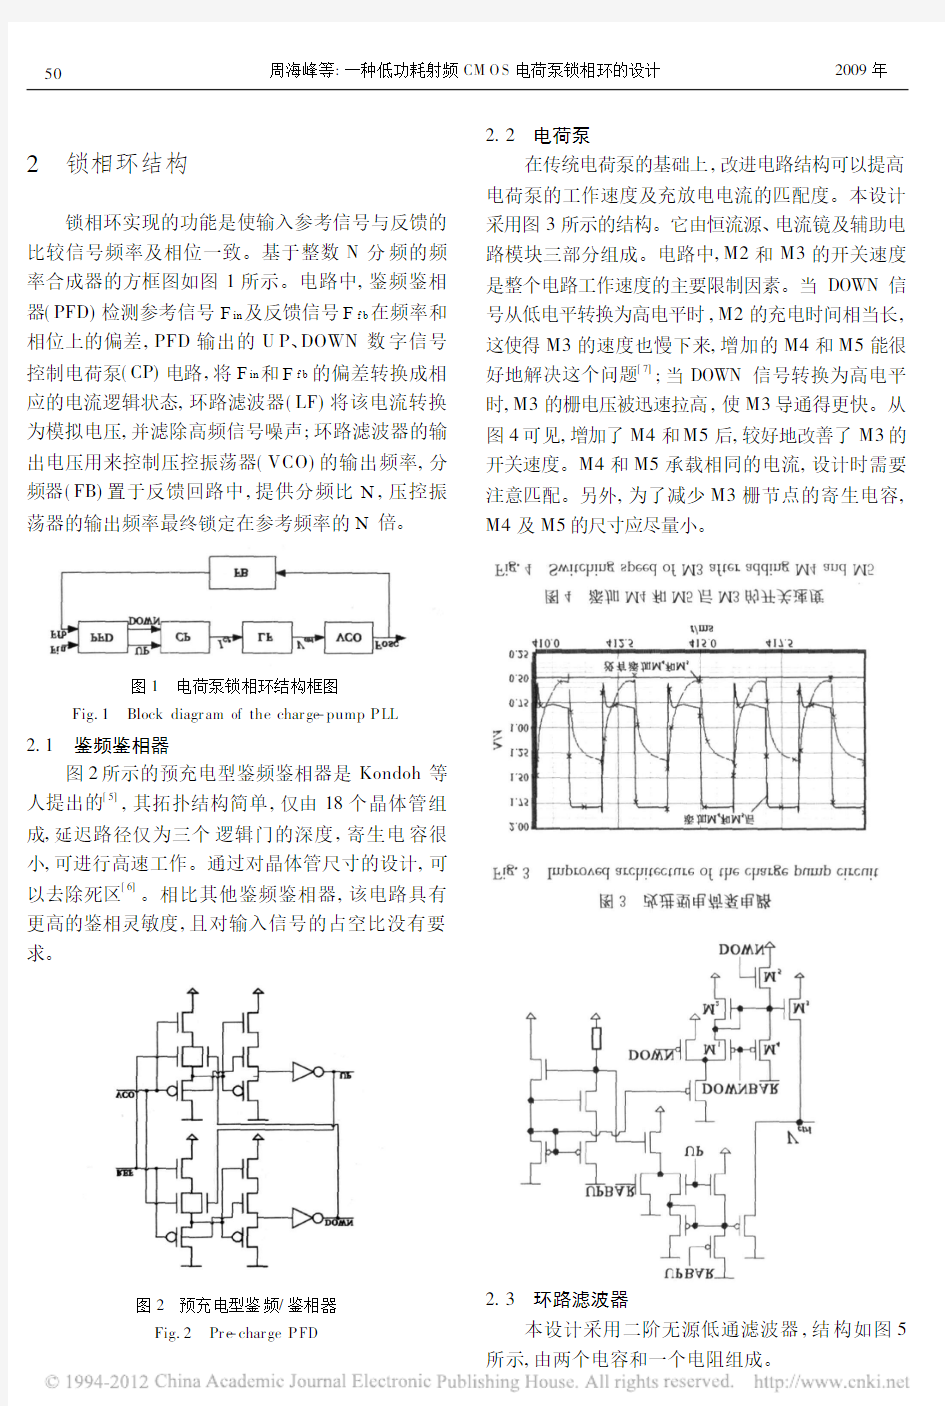 一种低功耗射频CMOS电荷泵锁相环的设计_周海峰